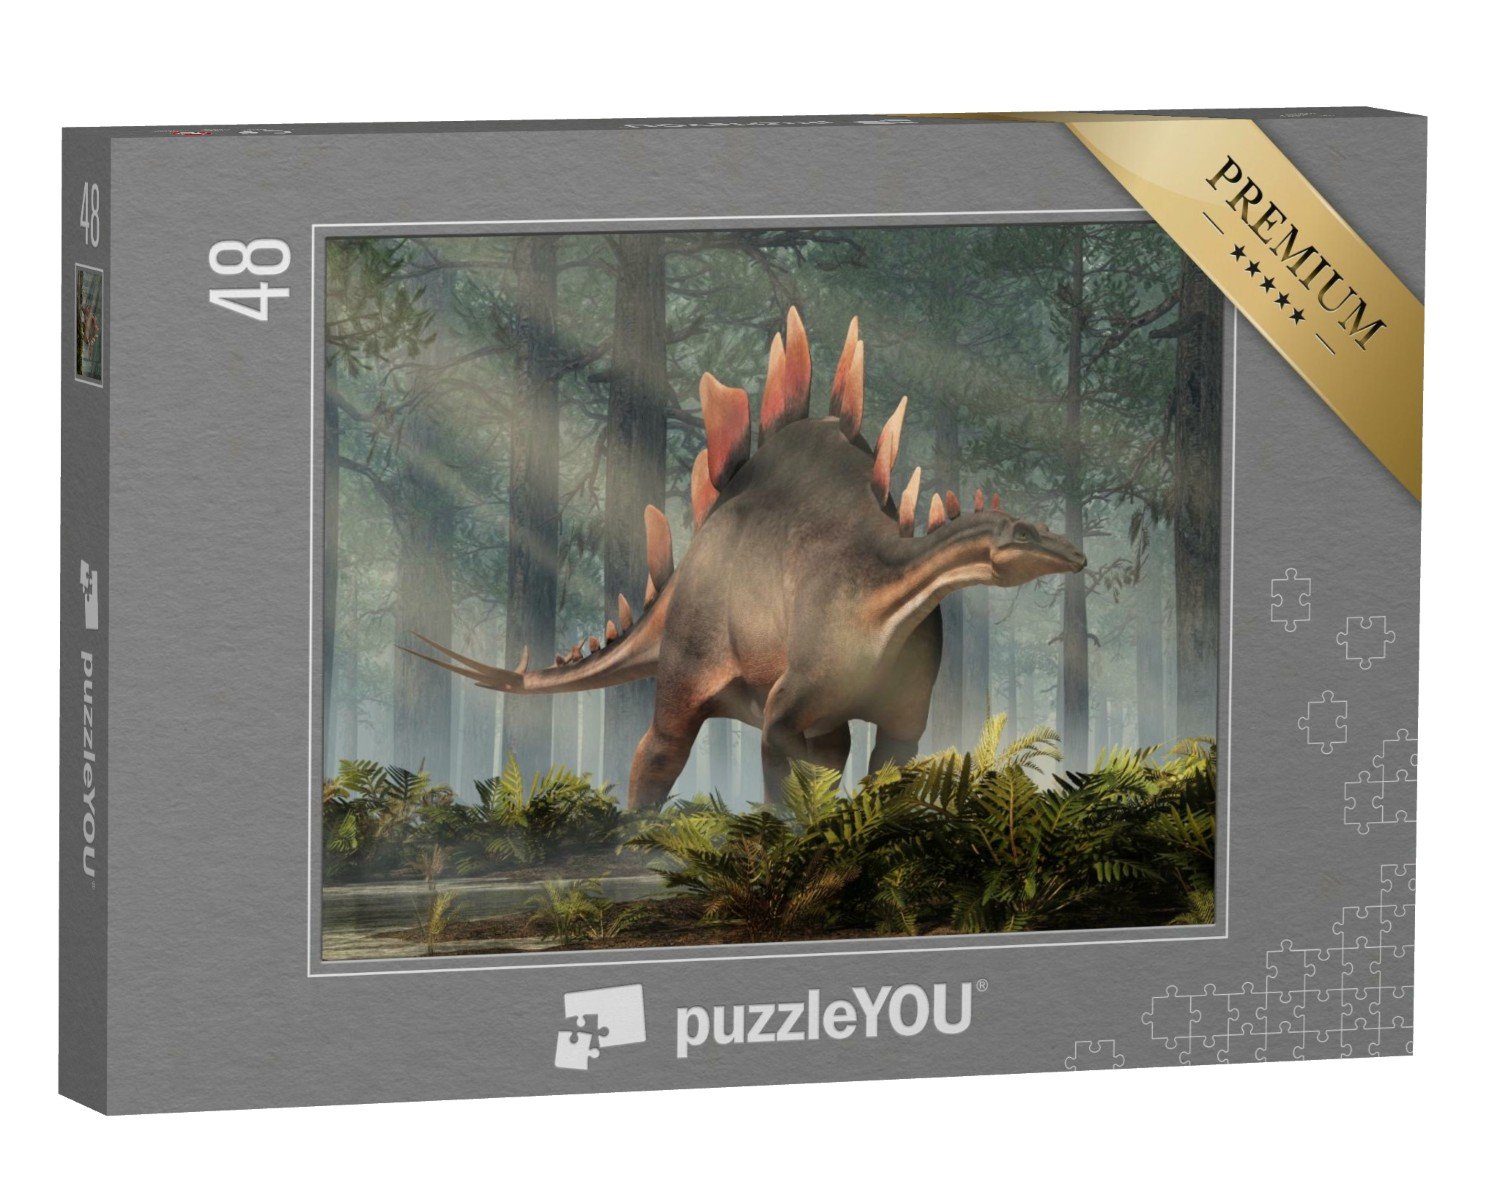 Puzzle puzzleYOU Urzeit 48 Stegosaurus, & Tiere Dinosaurier, aus Pflanzenfresser, ein Fantasy Puzzleteile, 3D-Illustration, puzzleYOU-Kollektionen